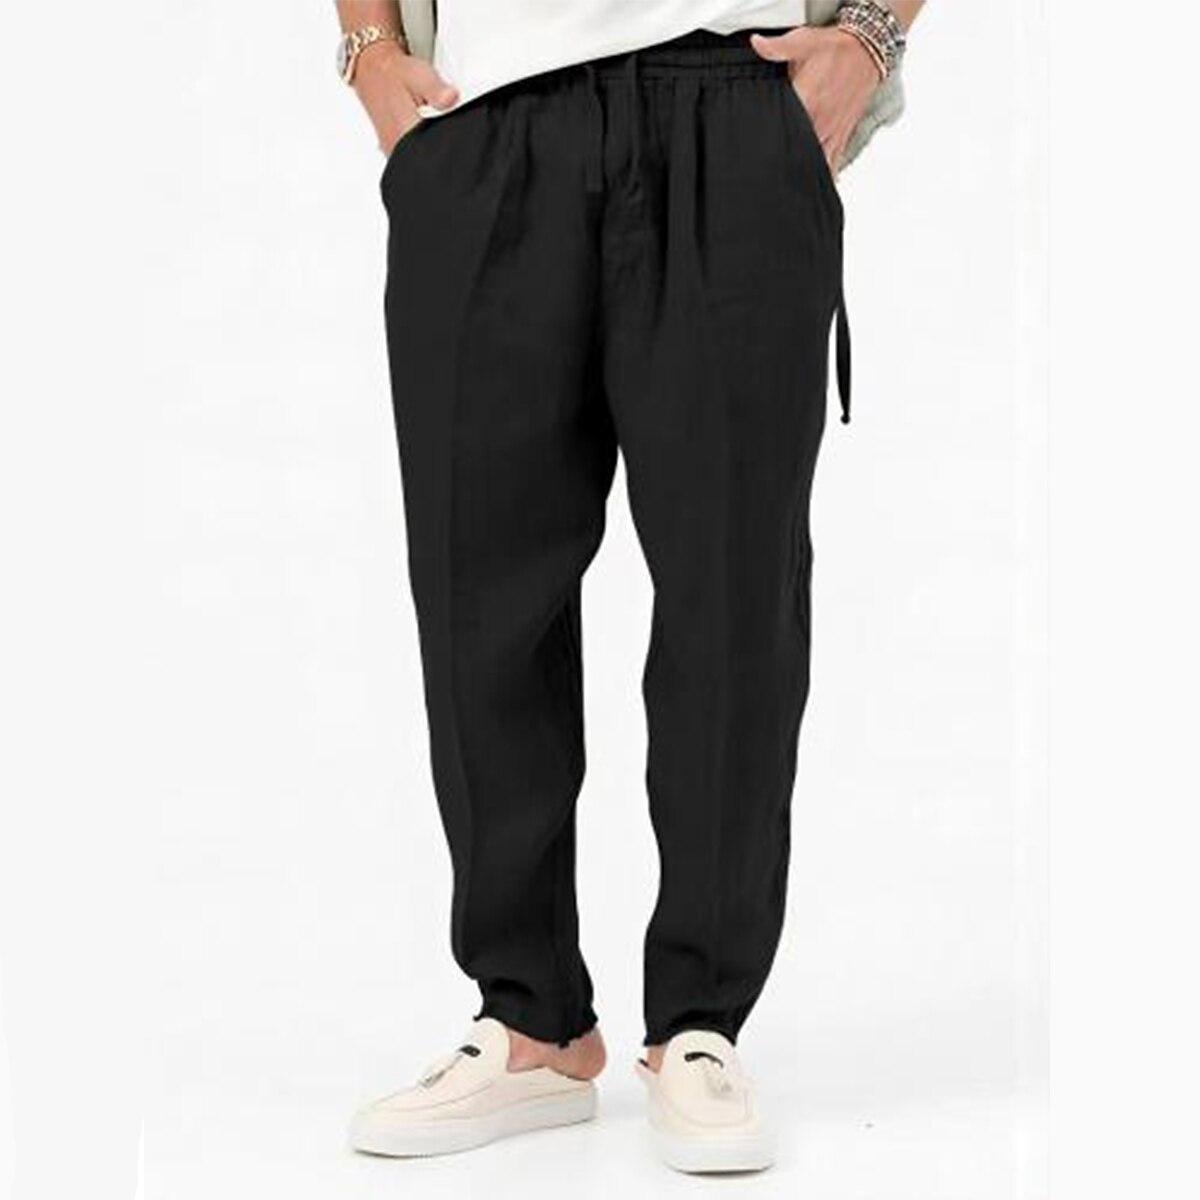 Men's Linen Pants Drawstring Elastic Waist Pleats Plain Comfort Breathable Casual Linen / Cotton Blend Classic Pants 